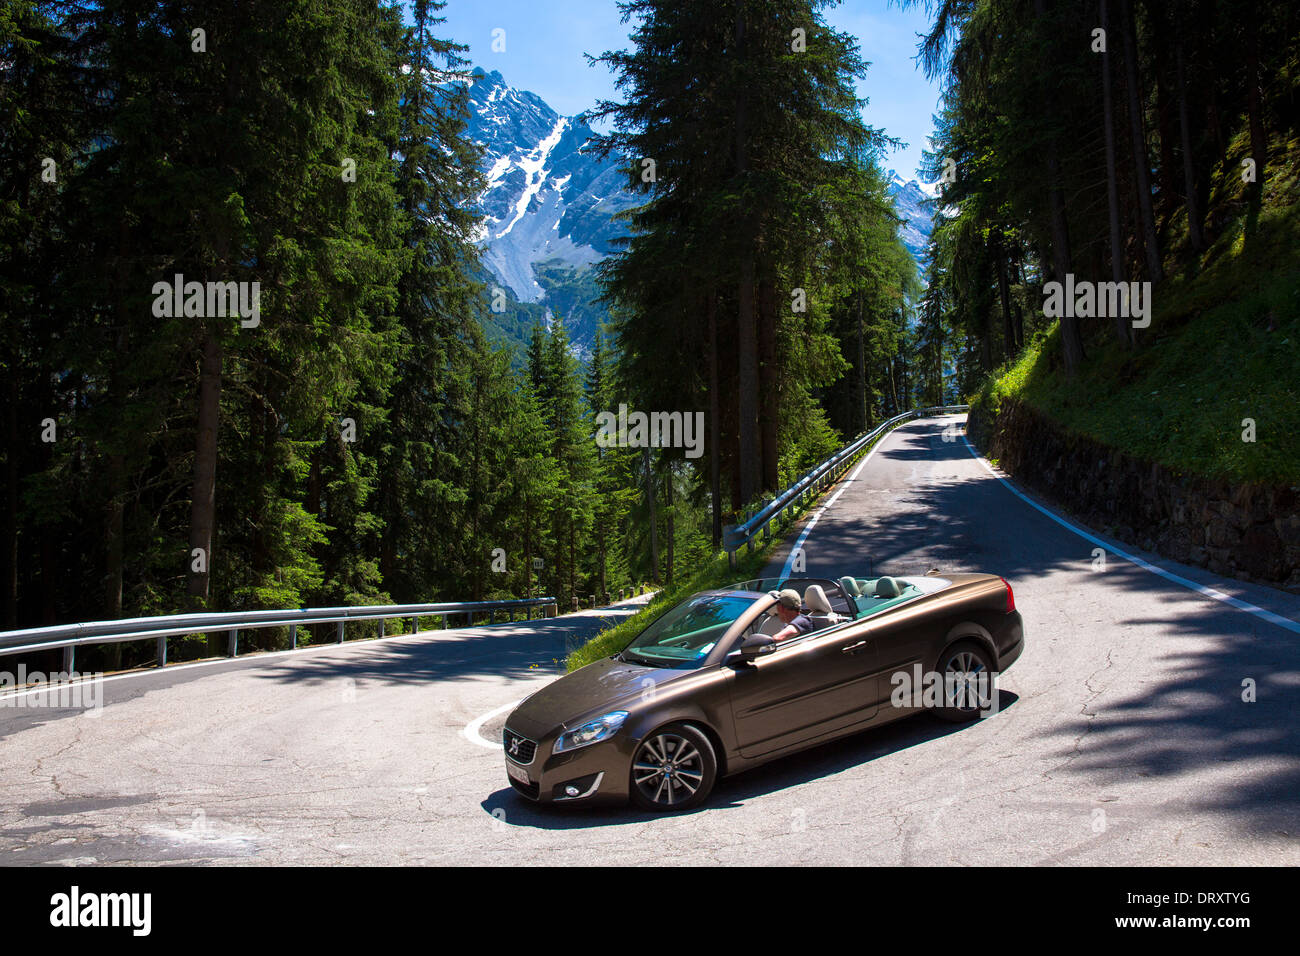 Volvo cabriolet sports car on The Stelvio Pass, Passo dello Stelvio, Stilfser Joch, route to Trafio in The Alps, Italy Stock Photo